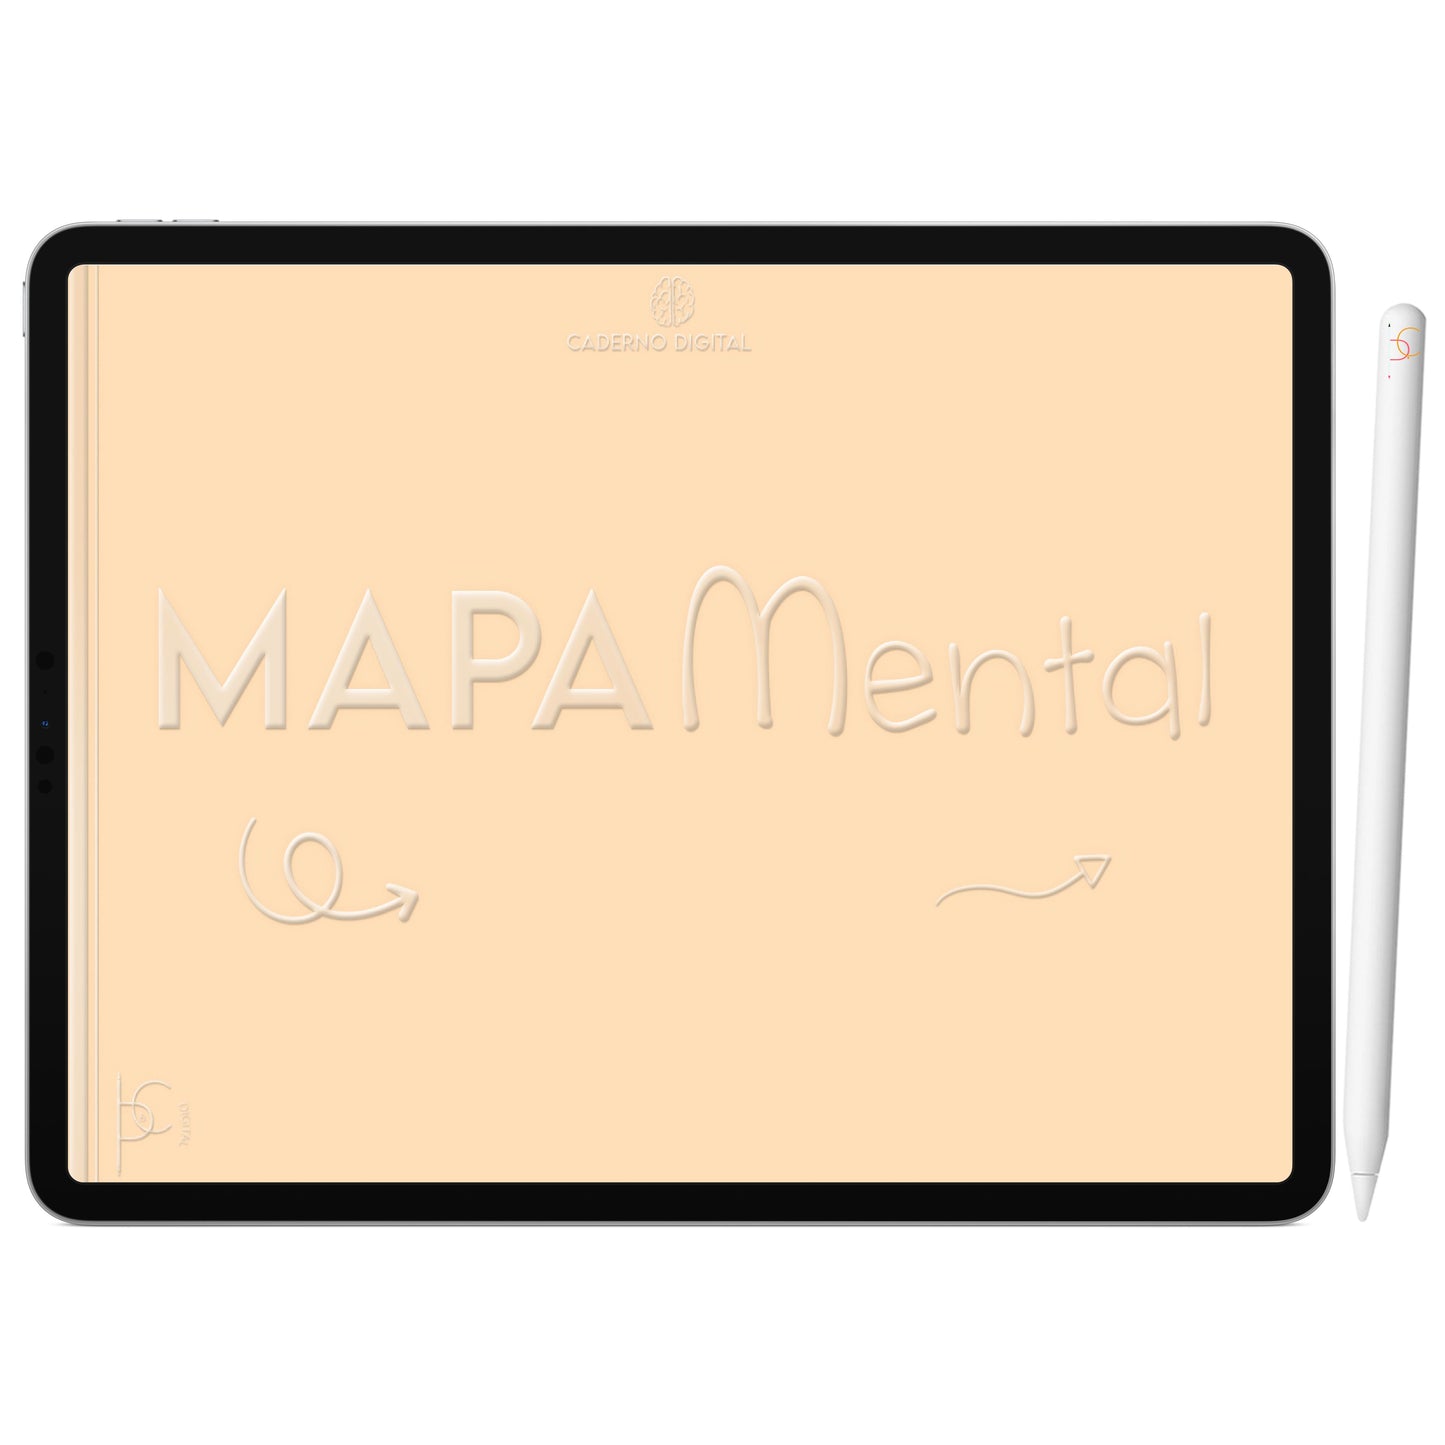 Mapa Mental Digital Laranja Arco-Íris ' 5 Matérias Divisórias • Study • iPad Tablet • GoodNotes Noteshelf  • Download instantâneo